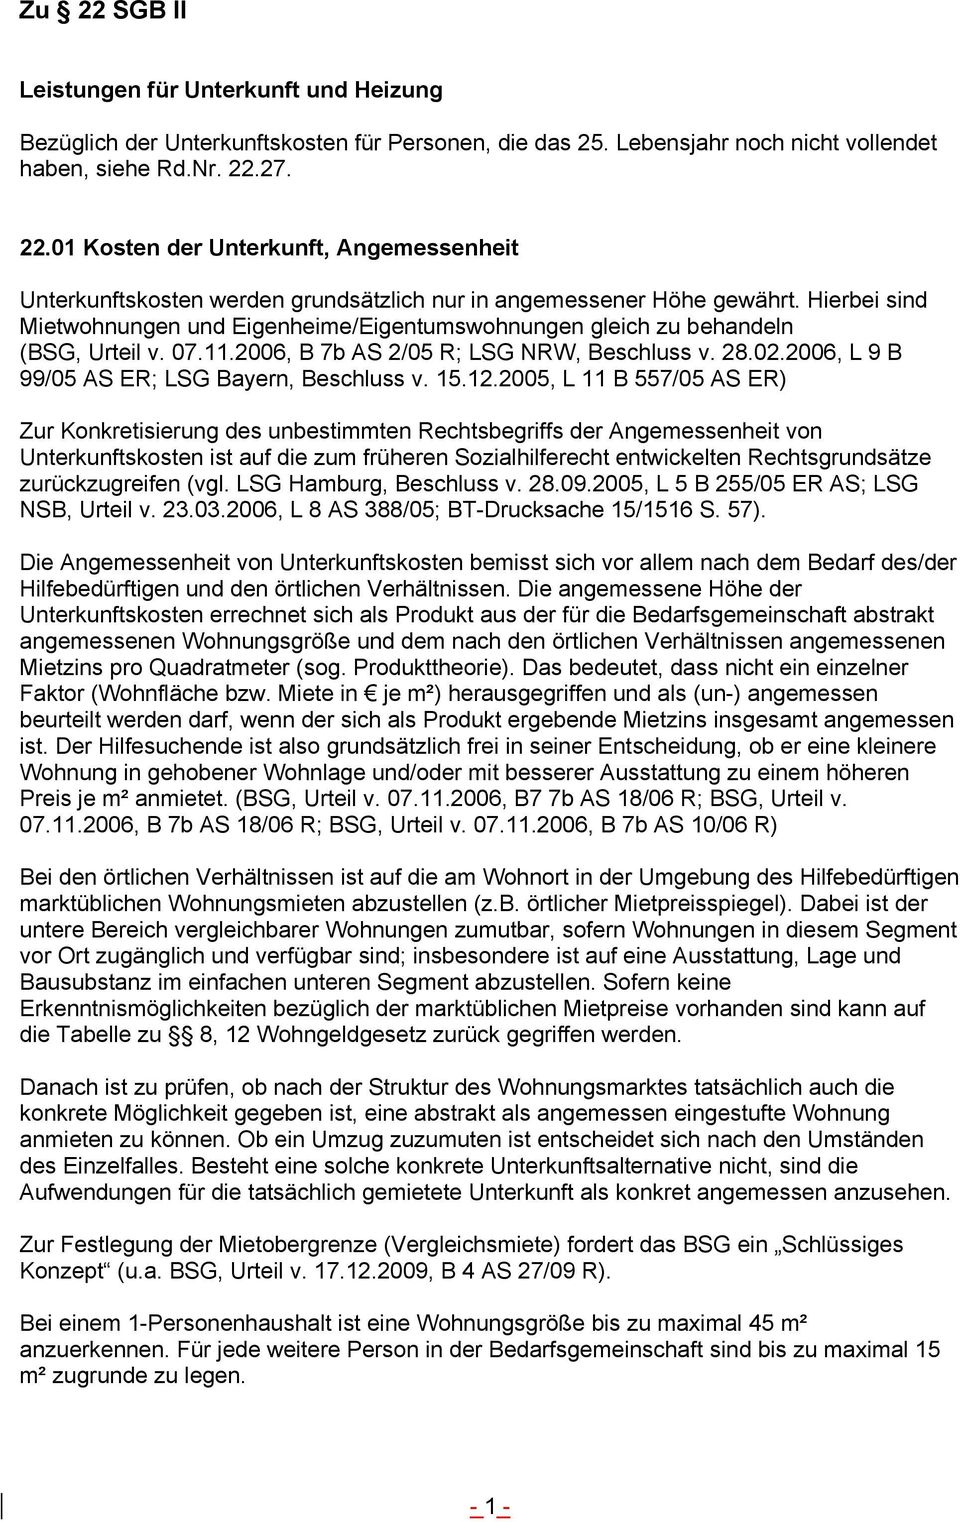 2006, L 9 B 99/05 AS ER; LSG Bayern, Beschluss v. 15.12.